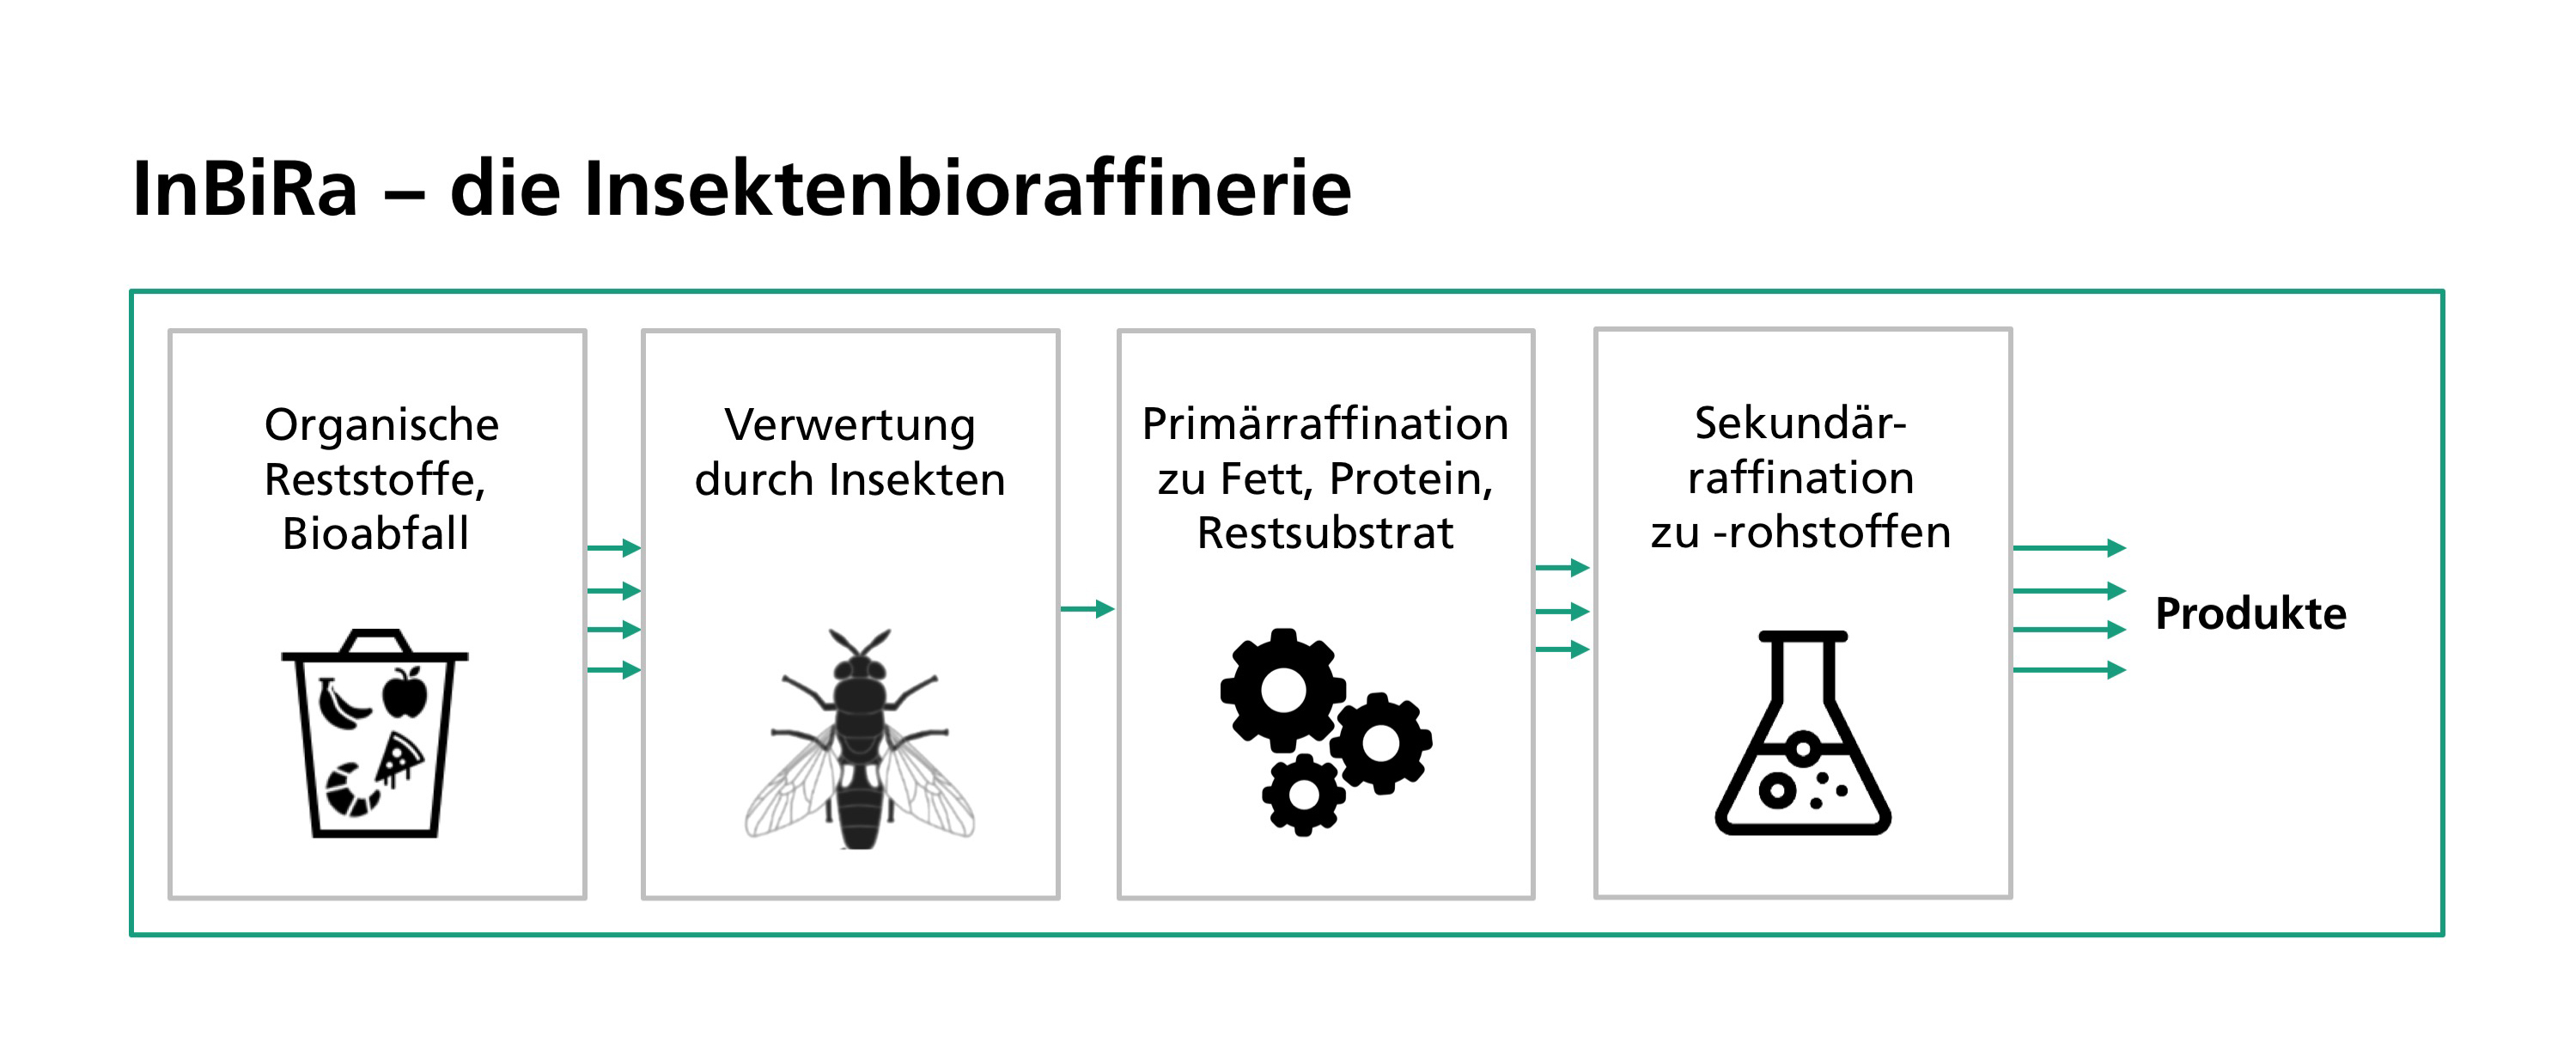 InBiRa, eine neue Insekten-Bioraffinerie, setzt organische Reststoffe und Bioabfälle als wertvolle Rohstoffe ein und wandelt sie in technisch nutzbare höherwertige Produkte um.